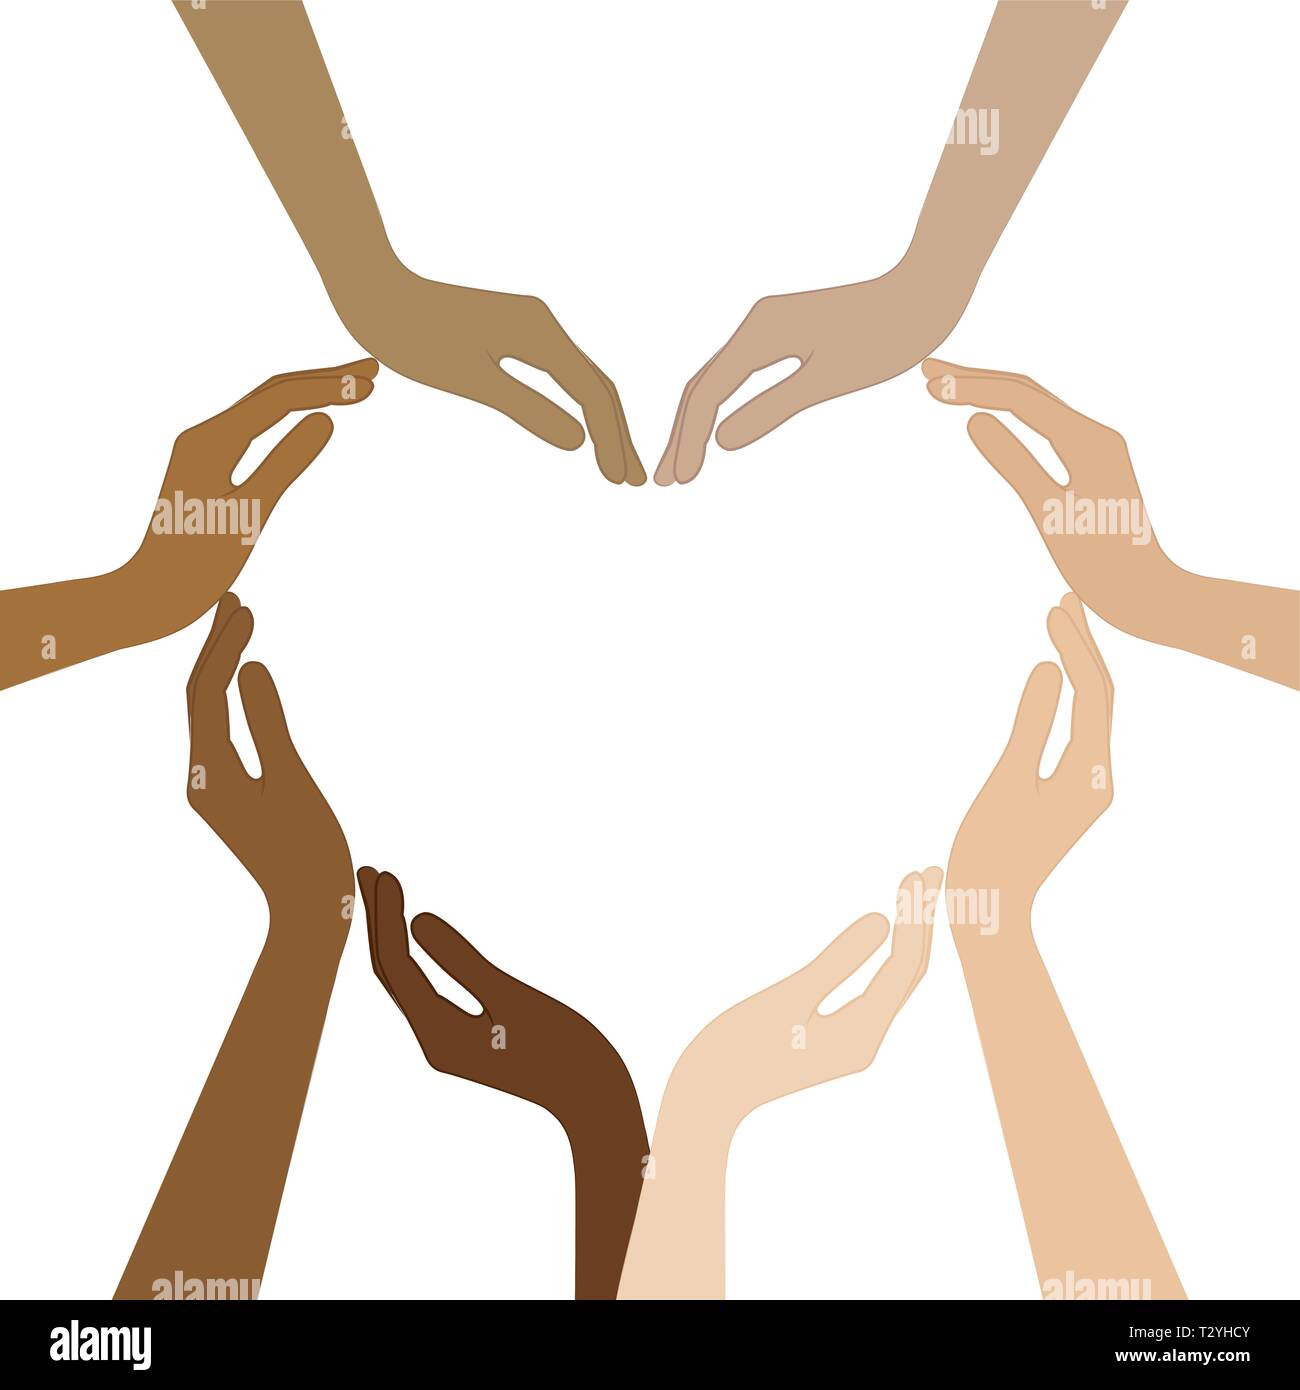 Le mani umane con diversi colori di pelle formano un cuore illustrazione vettoriale EPS10 Illustrazione Vettoriale